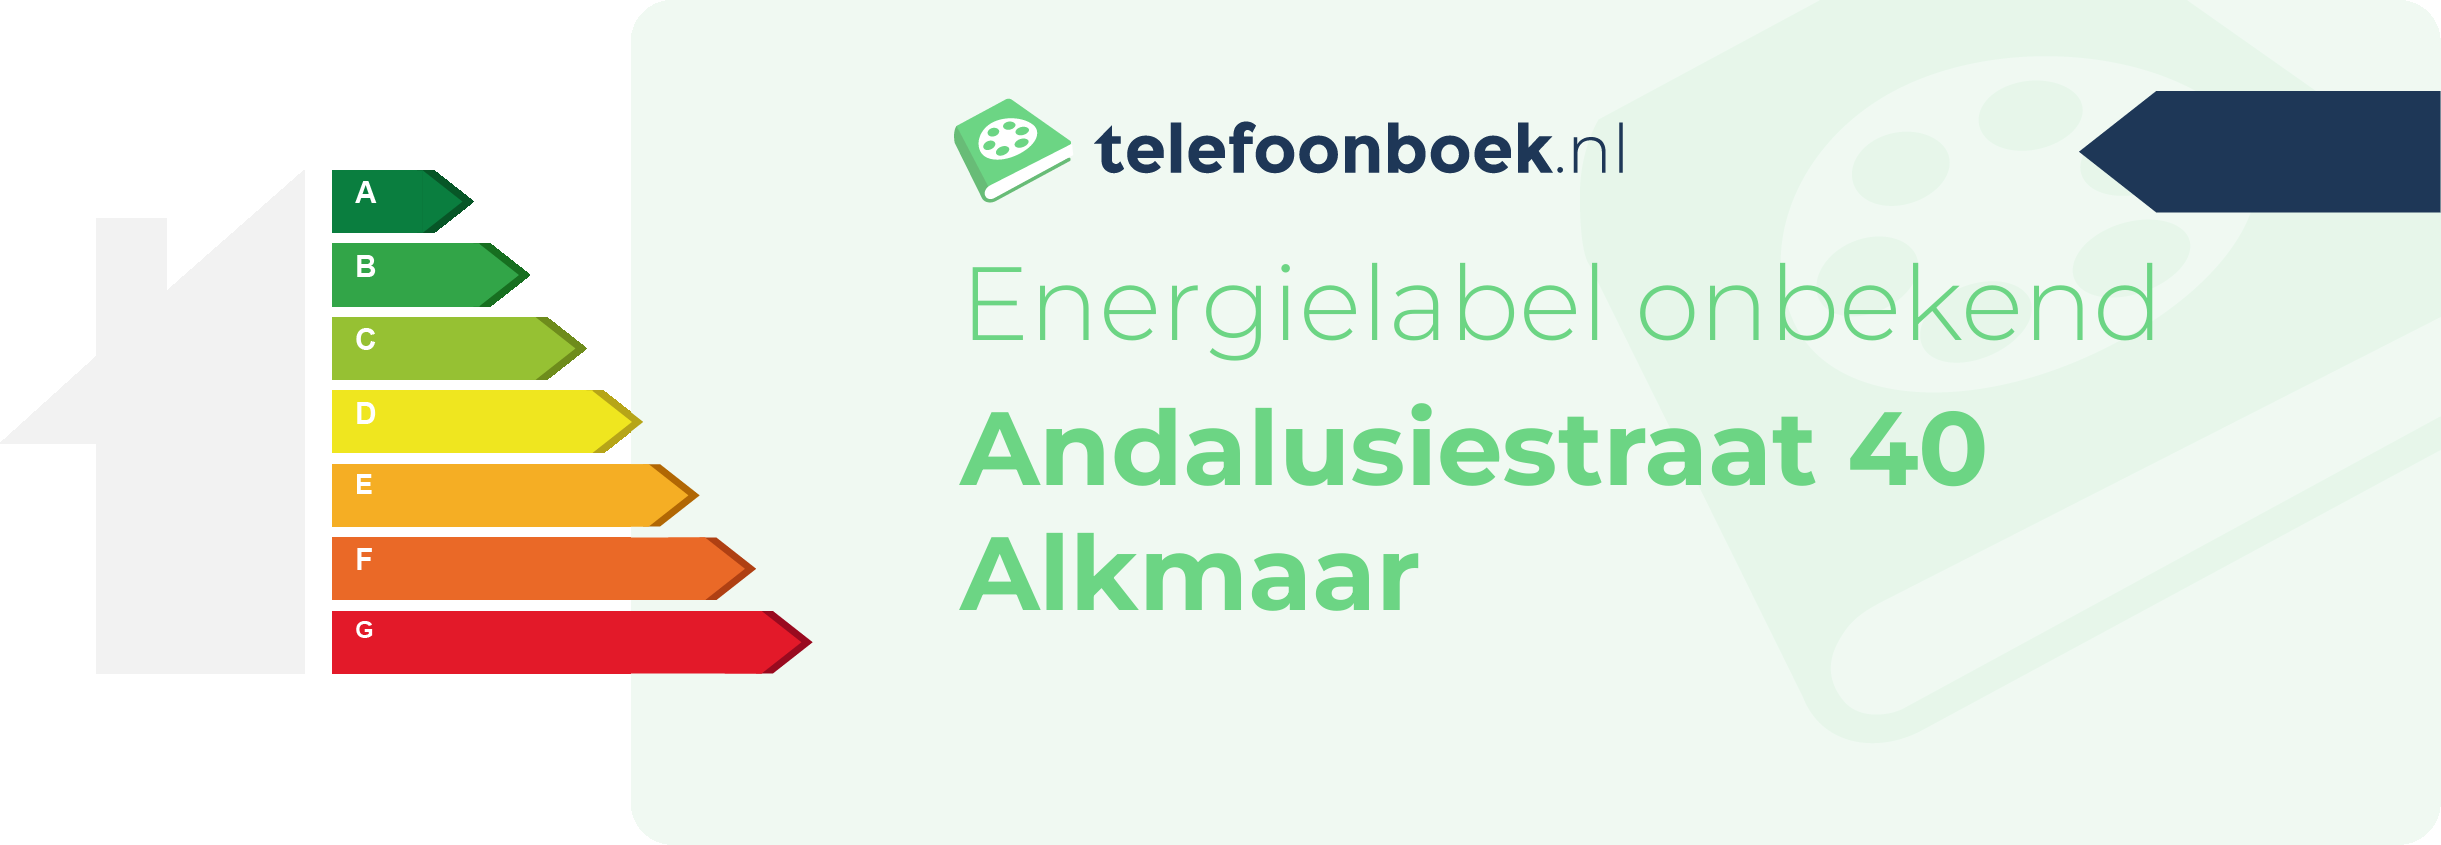 Energielabel Andalusiestraat 40 Alkmaar